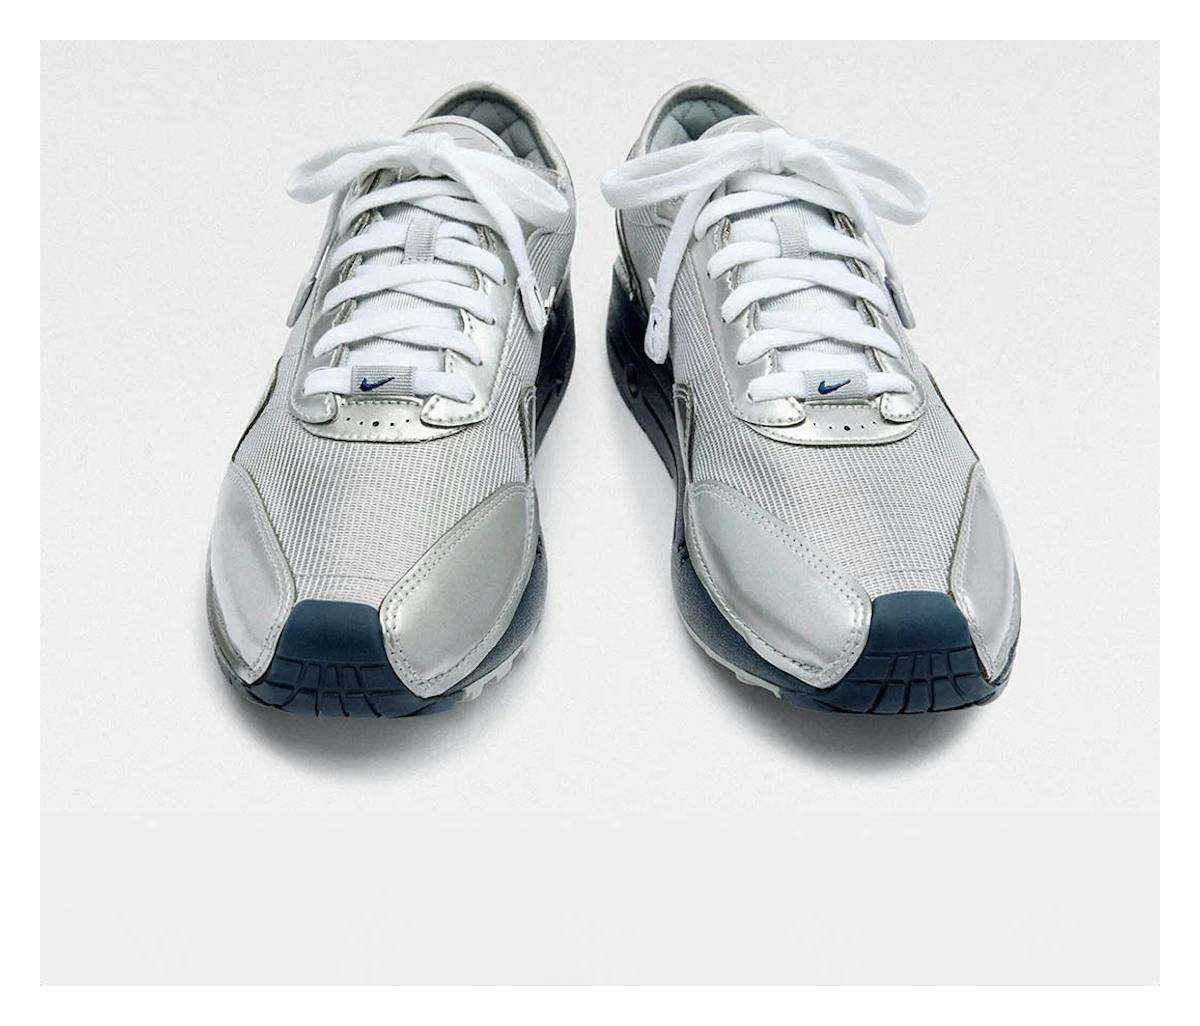 Jacquemus x Nike Air Max 1 '86 "Metallic Silver"